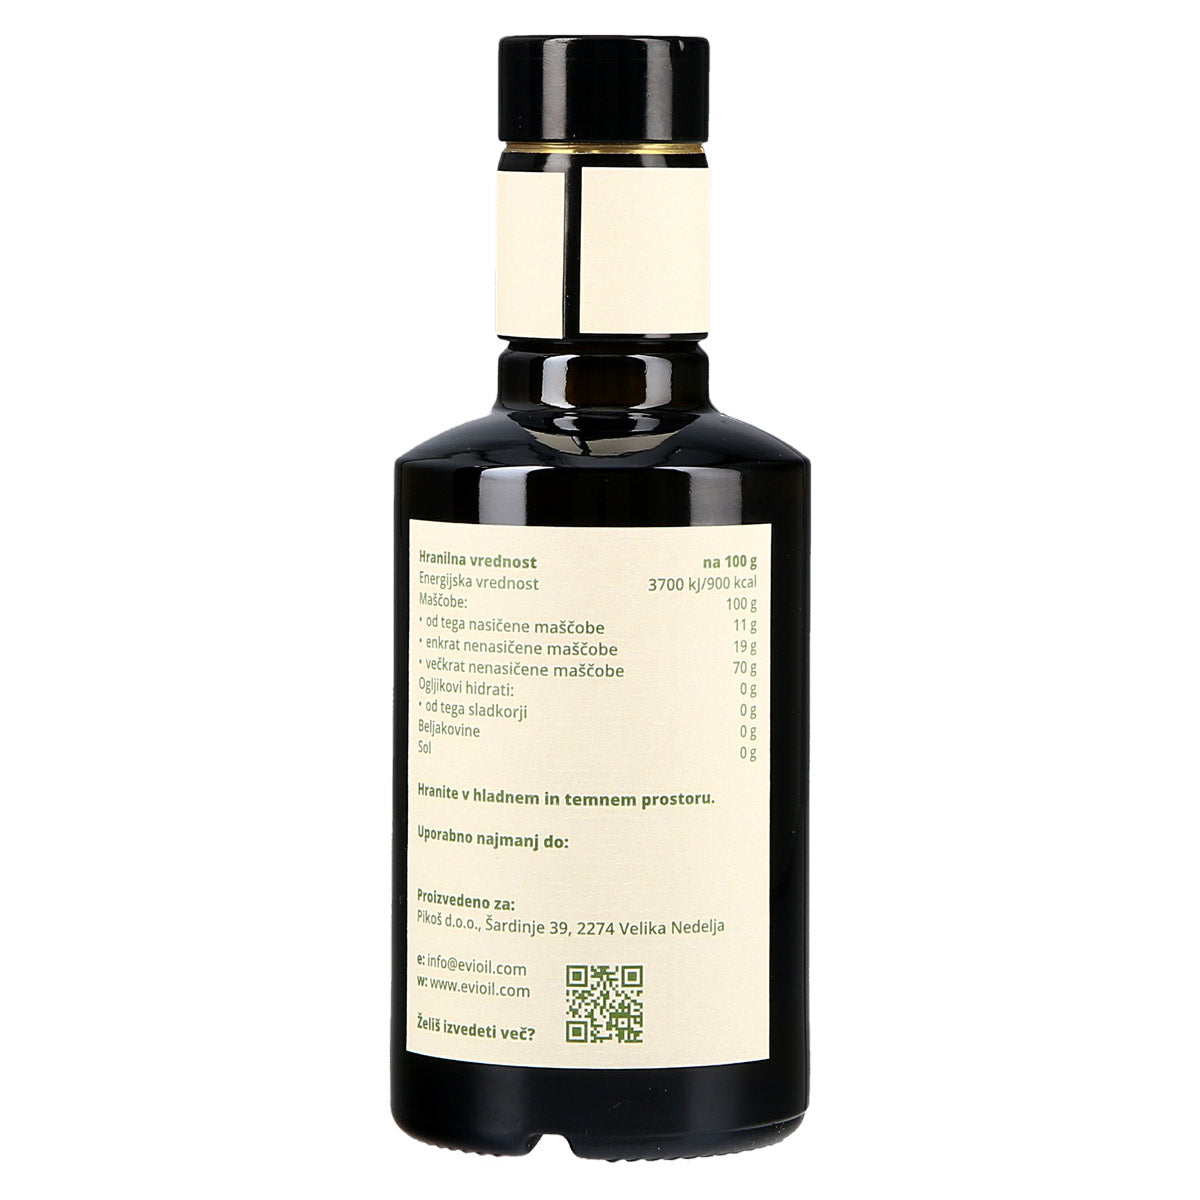 na deklaraciji za olje grozdnih pešk 250 ml piše, da olje grozdnih pečk Evioil vsebuje 70 g omega-6 nenasičenih maščob